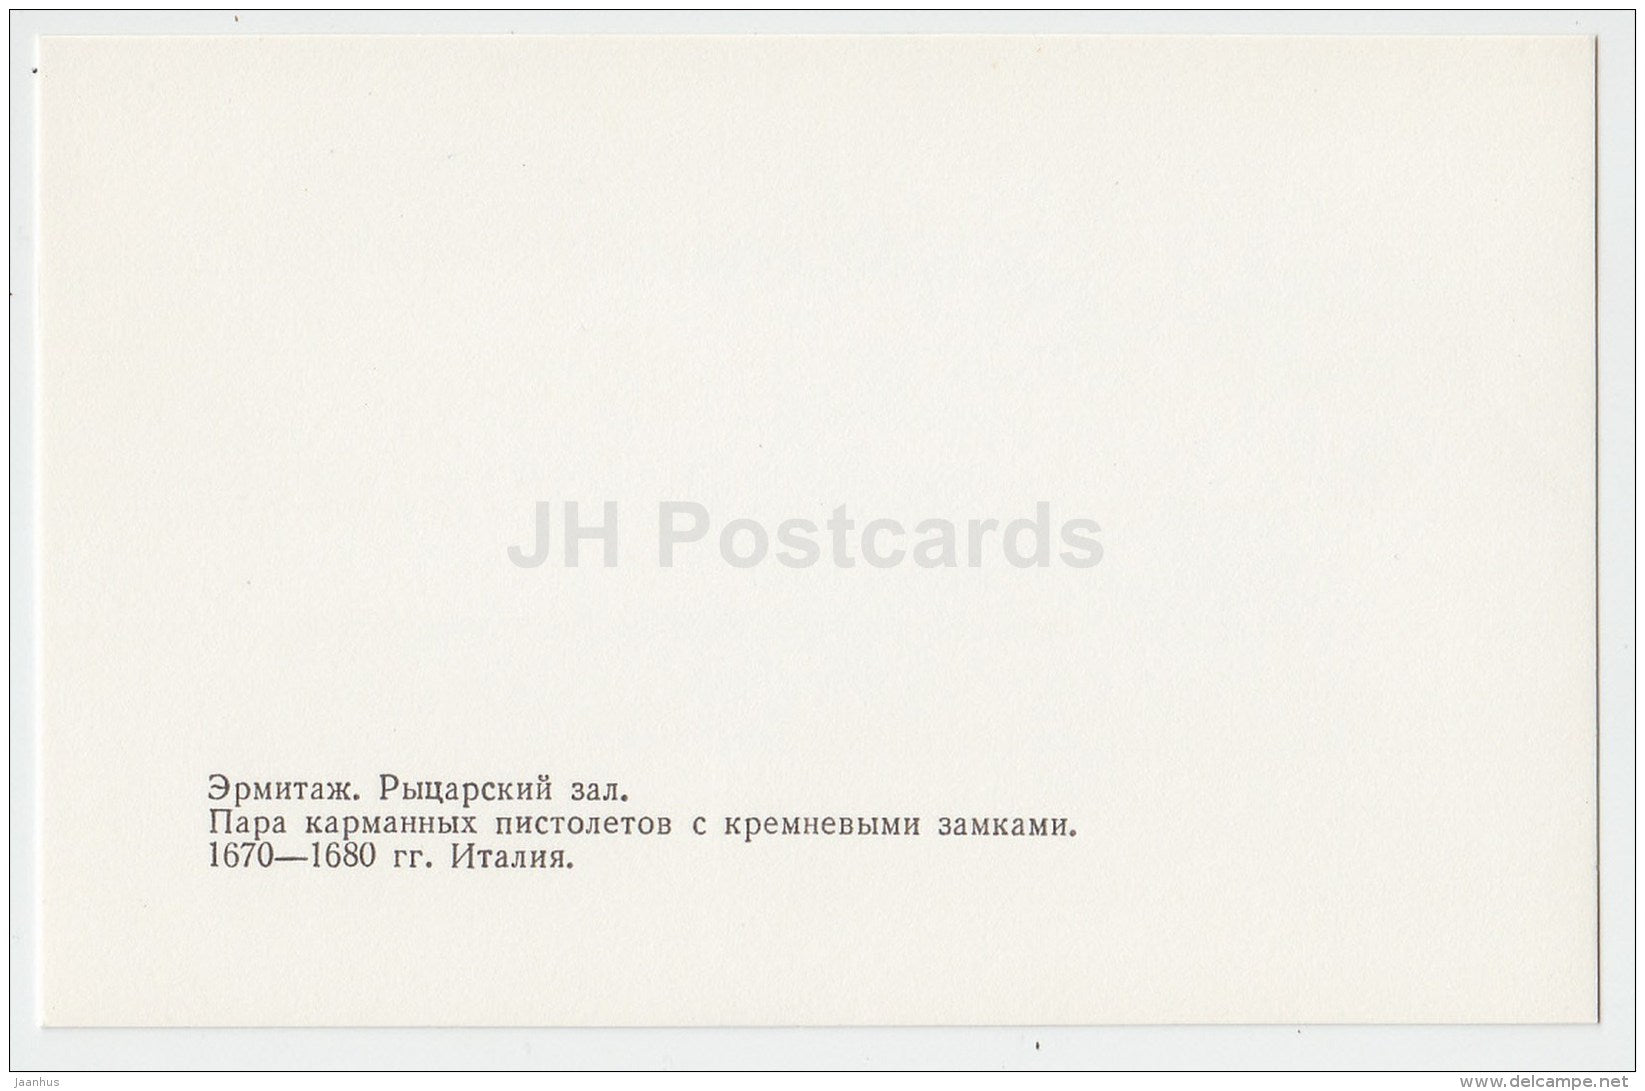 A pair of pocket pistols with flint locks - Hermitage - Knights' Hall - St. Petersburg - 1986 - Russia USSR - unused - JH Postcards